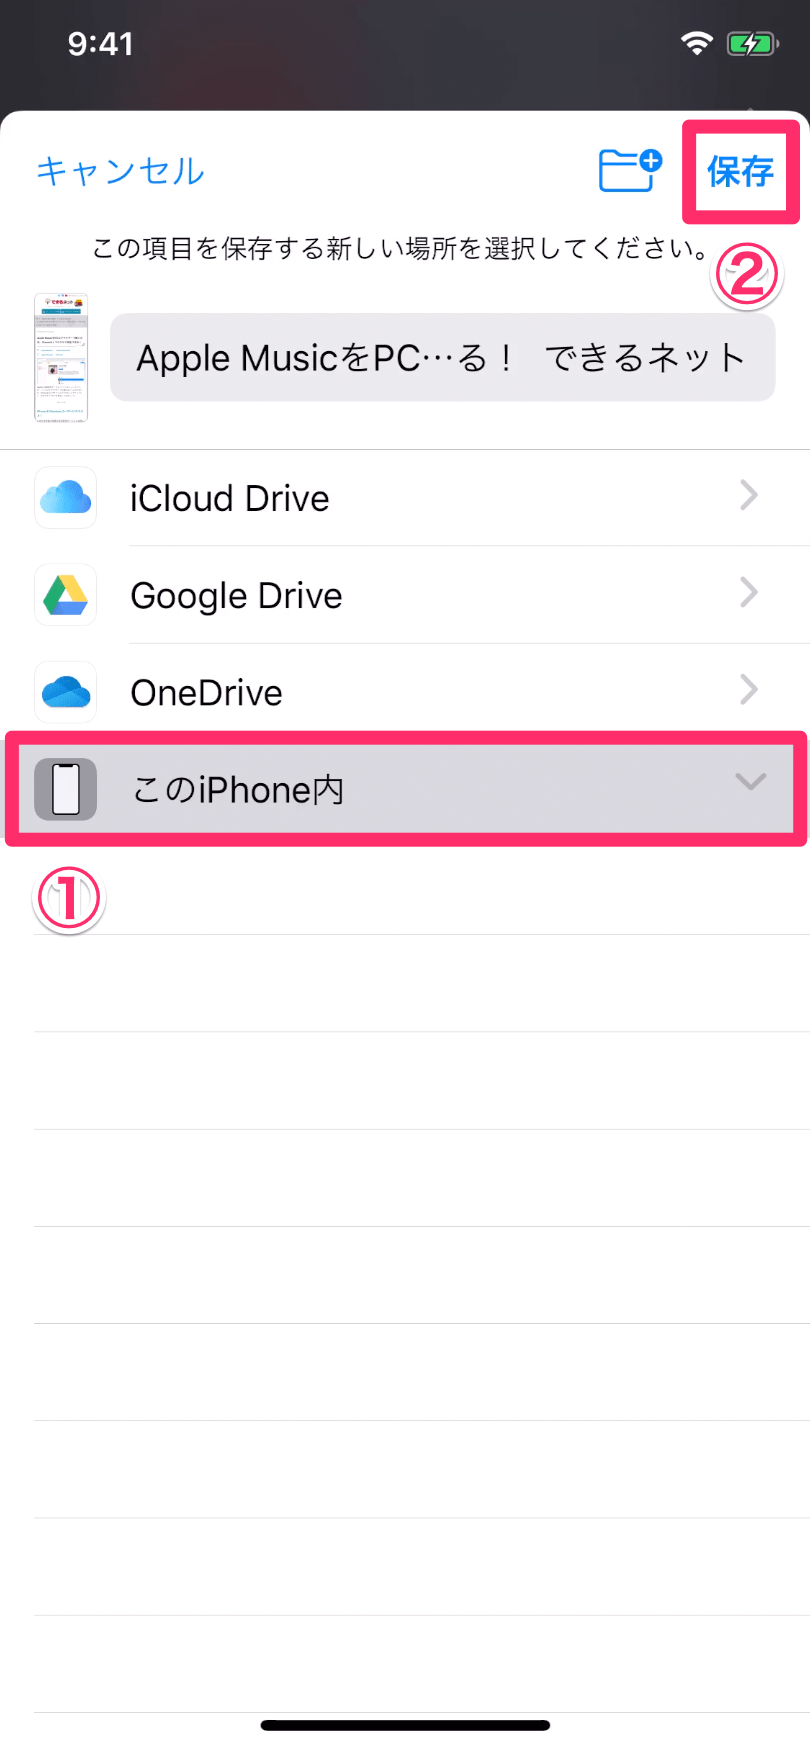 【iOS 13】iPhoneでWebページ全体を撮影する方法。「フルページ」でPDF保存が便利すぎる！